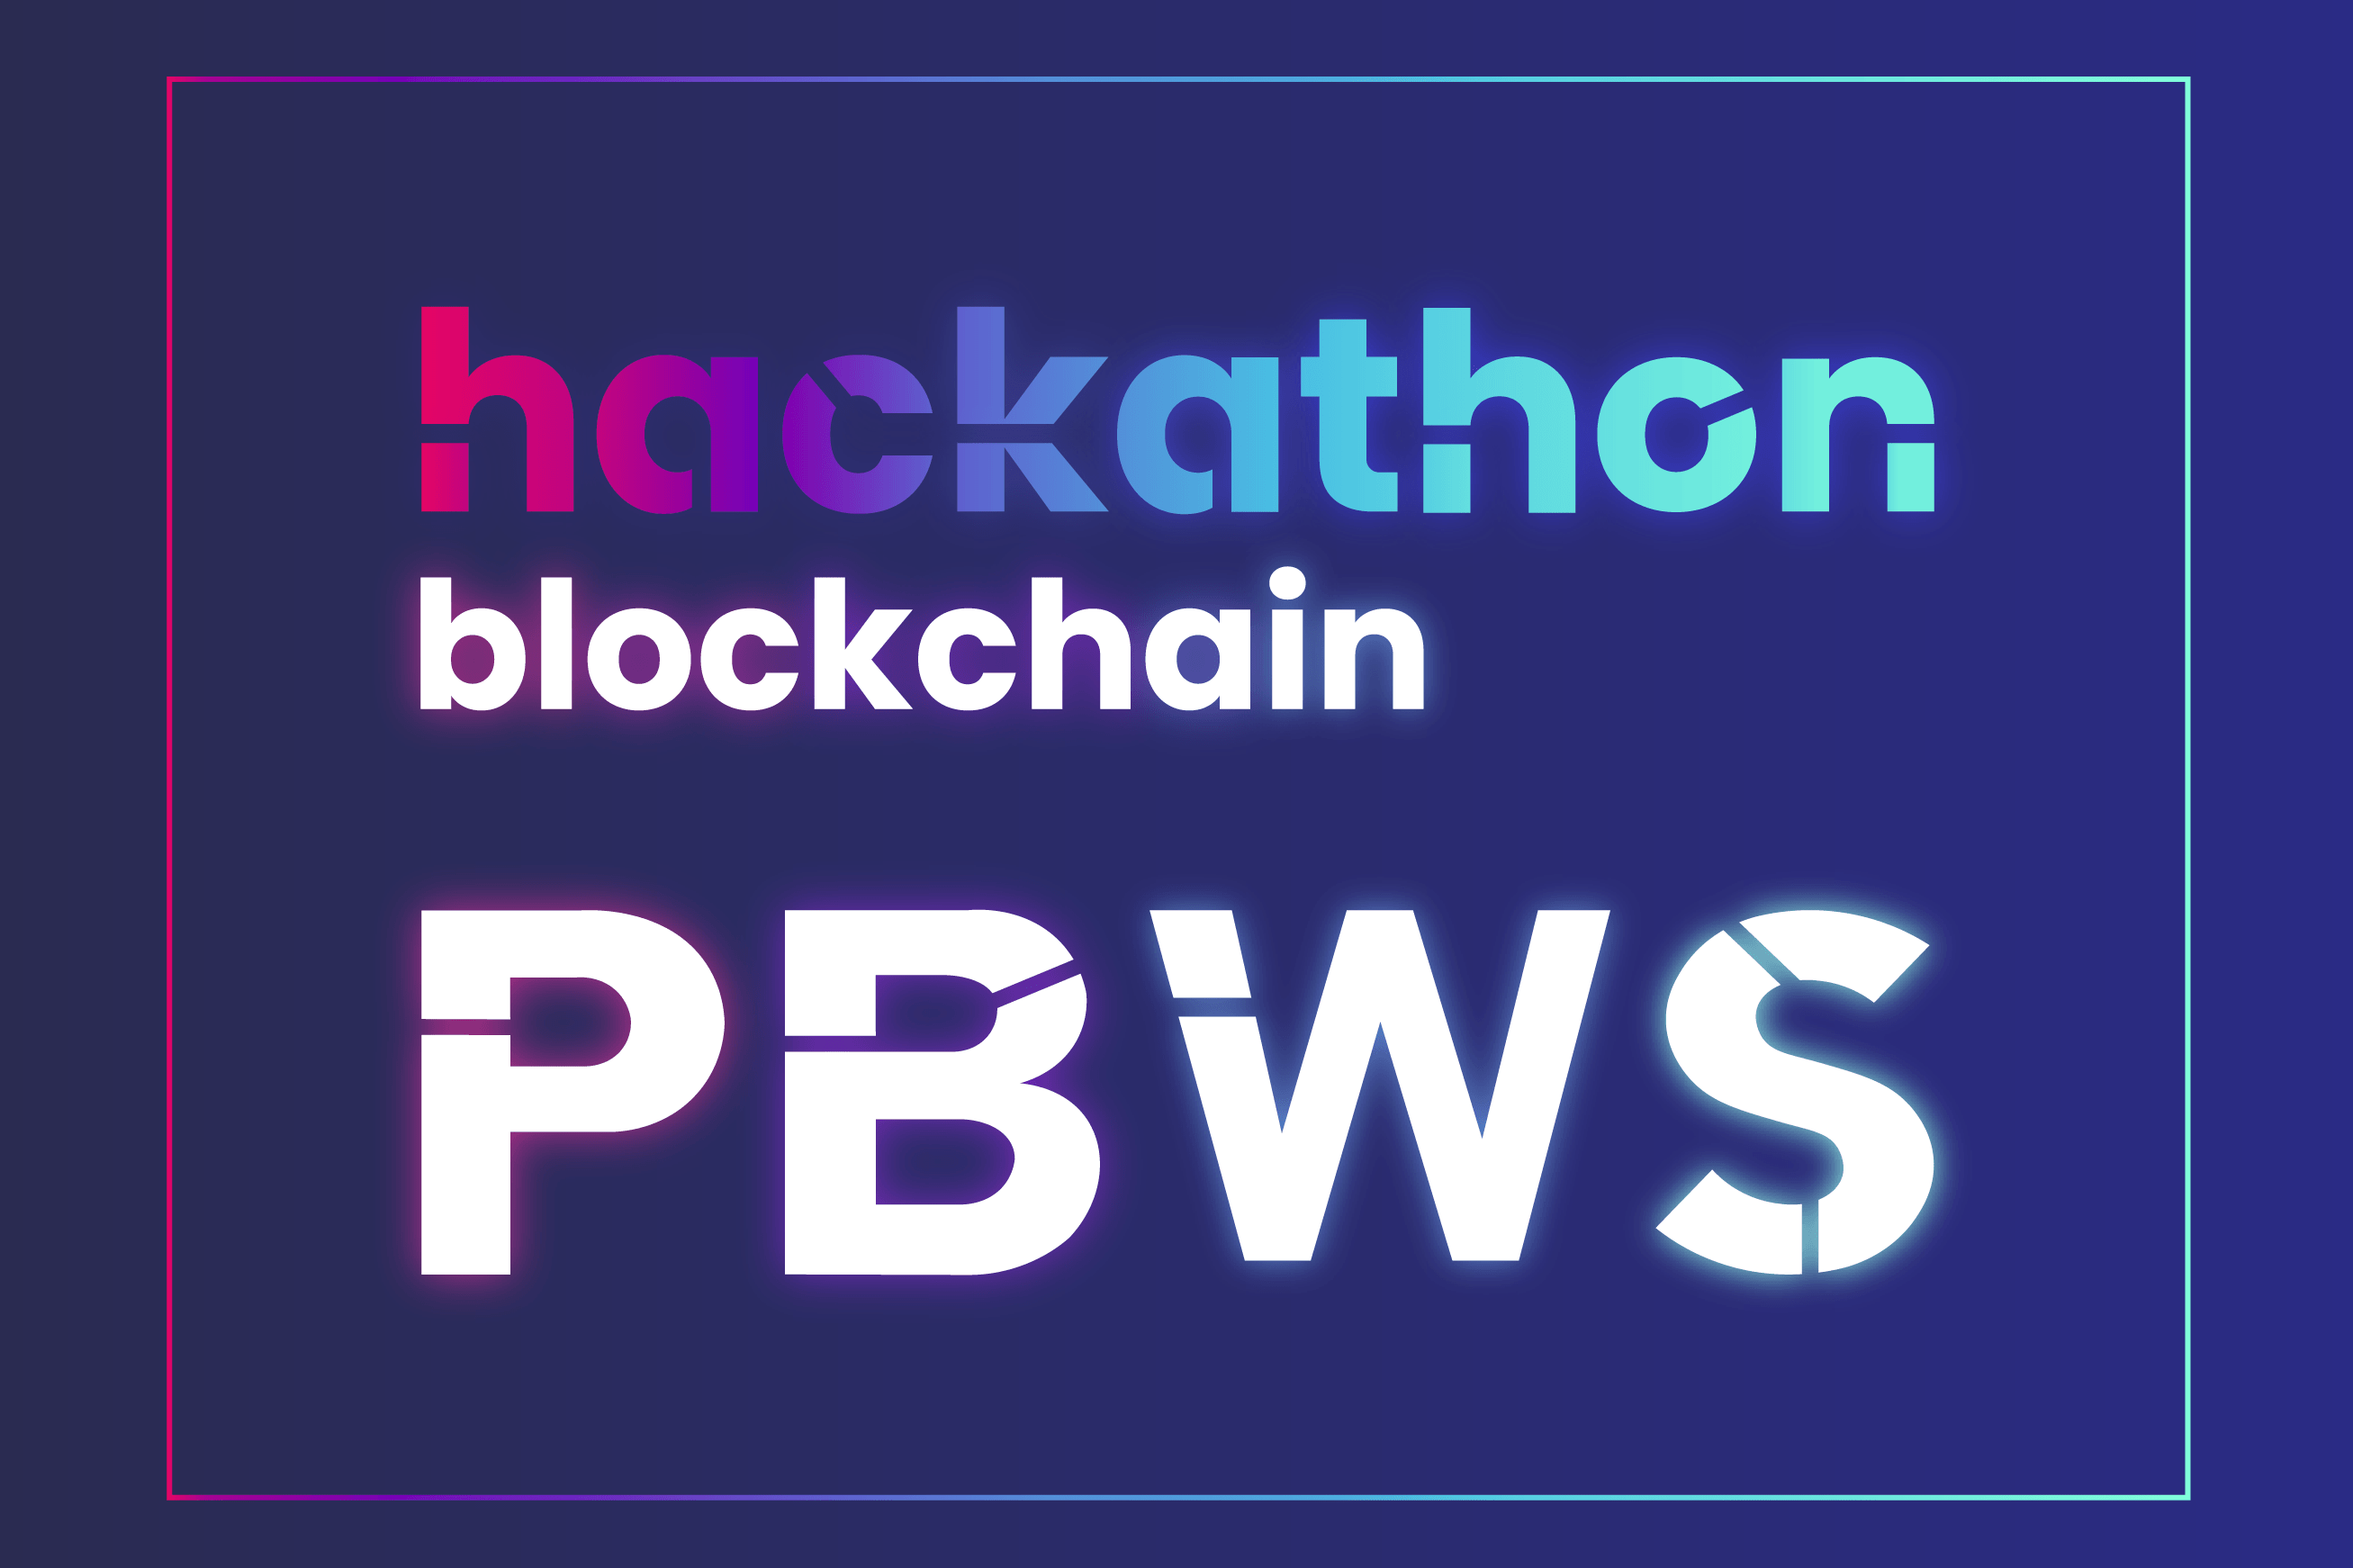 Hackathon blockchain PBWS